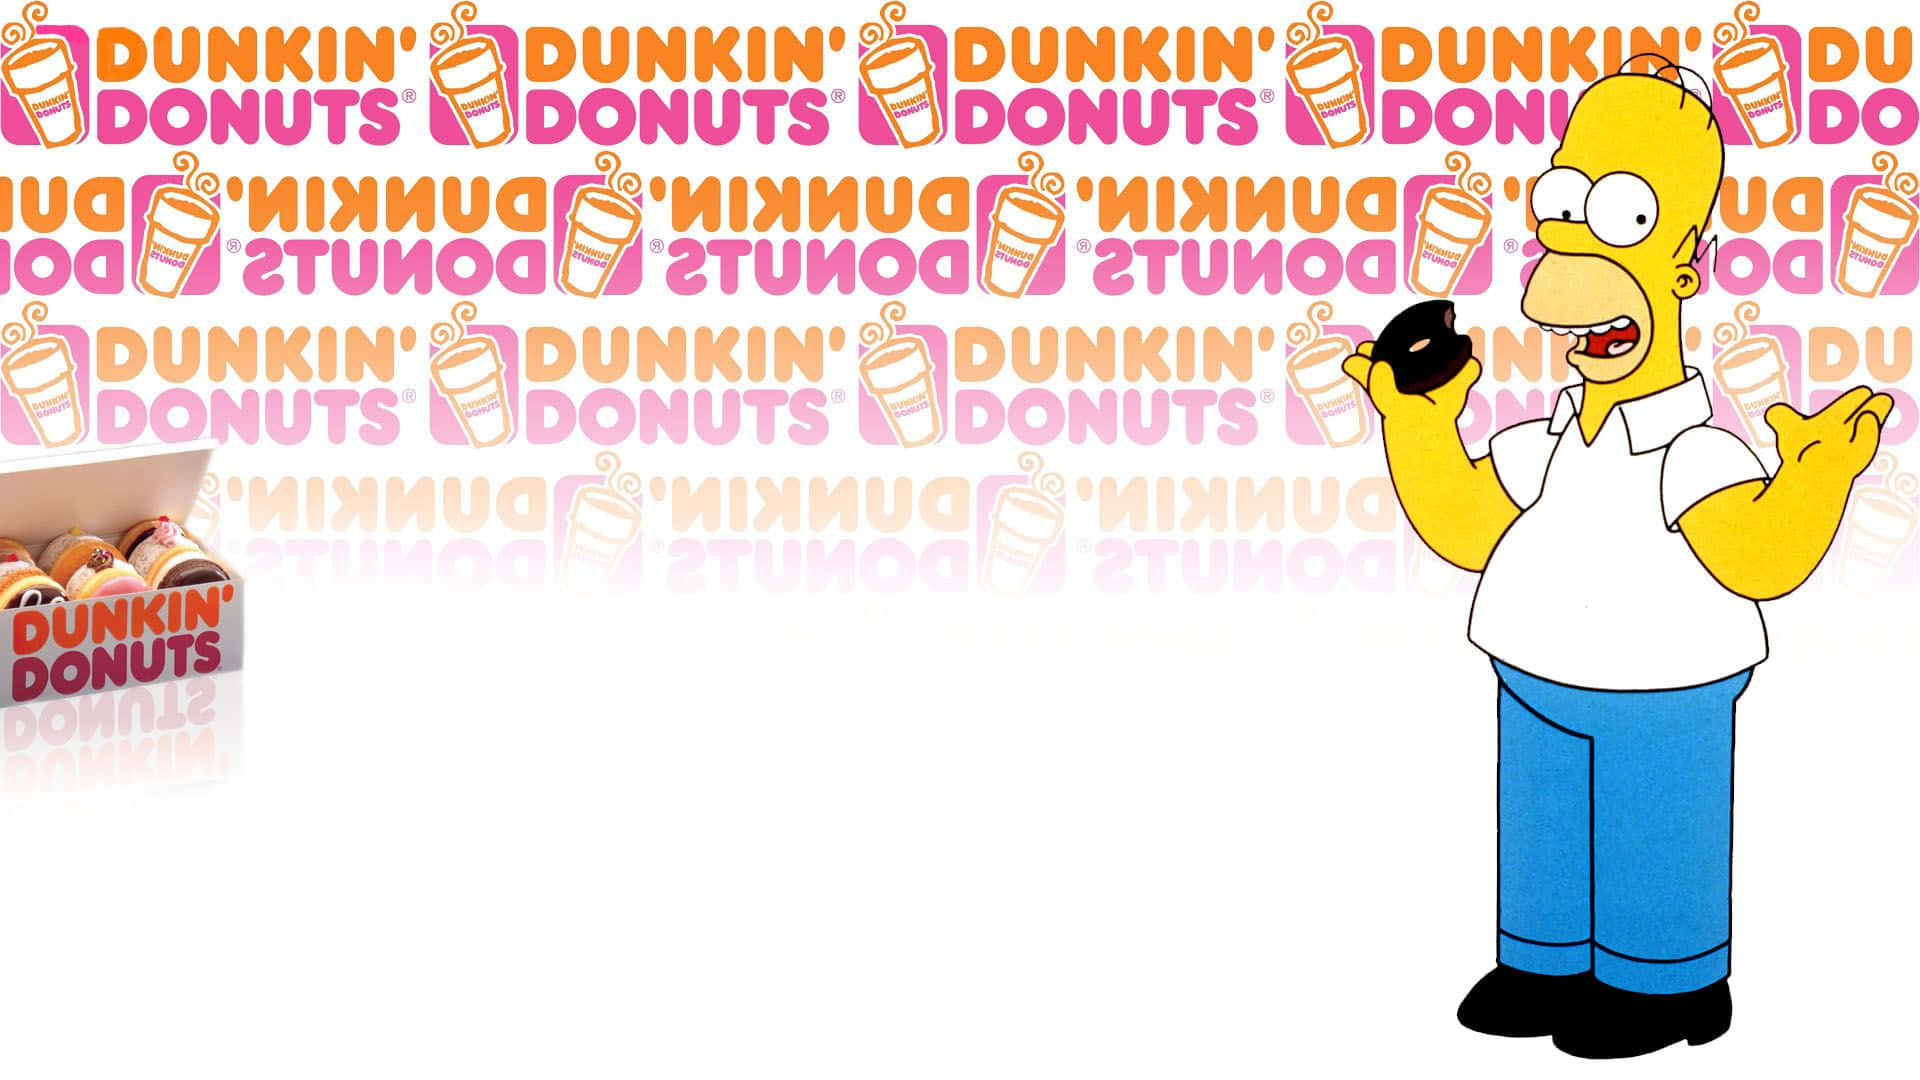 Stillensie Ihre Gelüste Mit Dunkin Donuts!